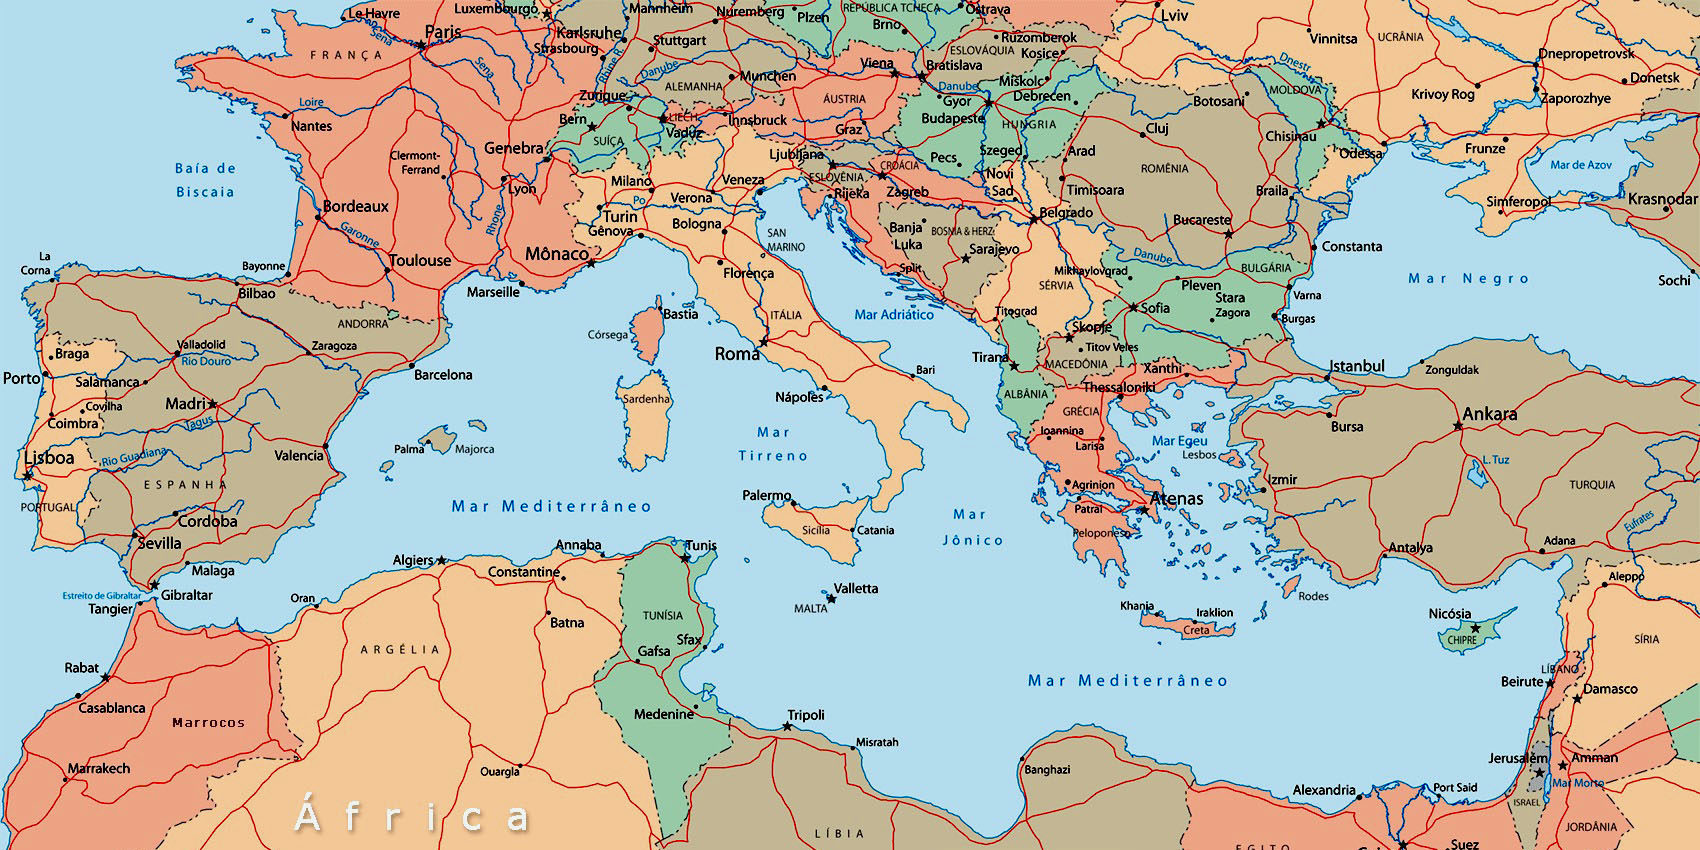 Risultato immagini per cartina mediterraneo